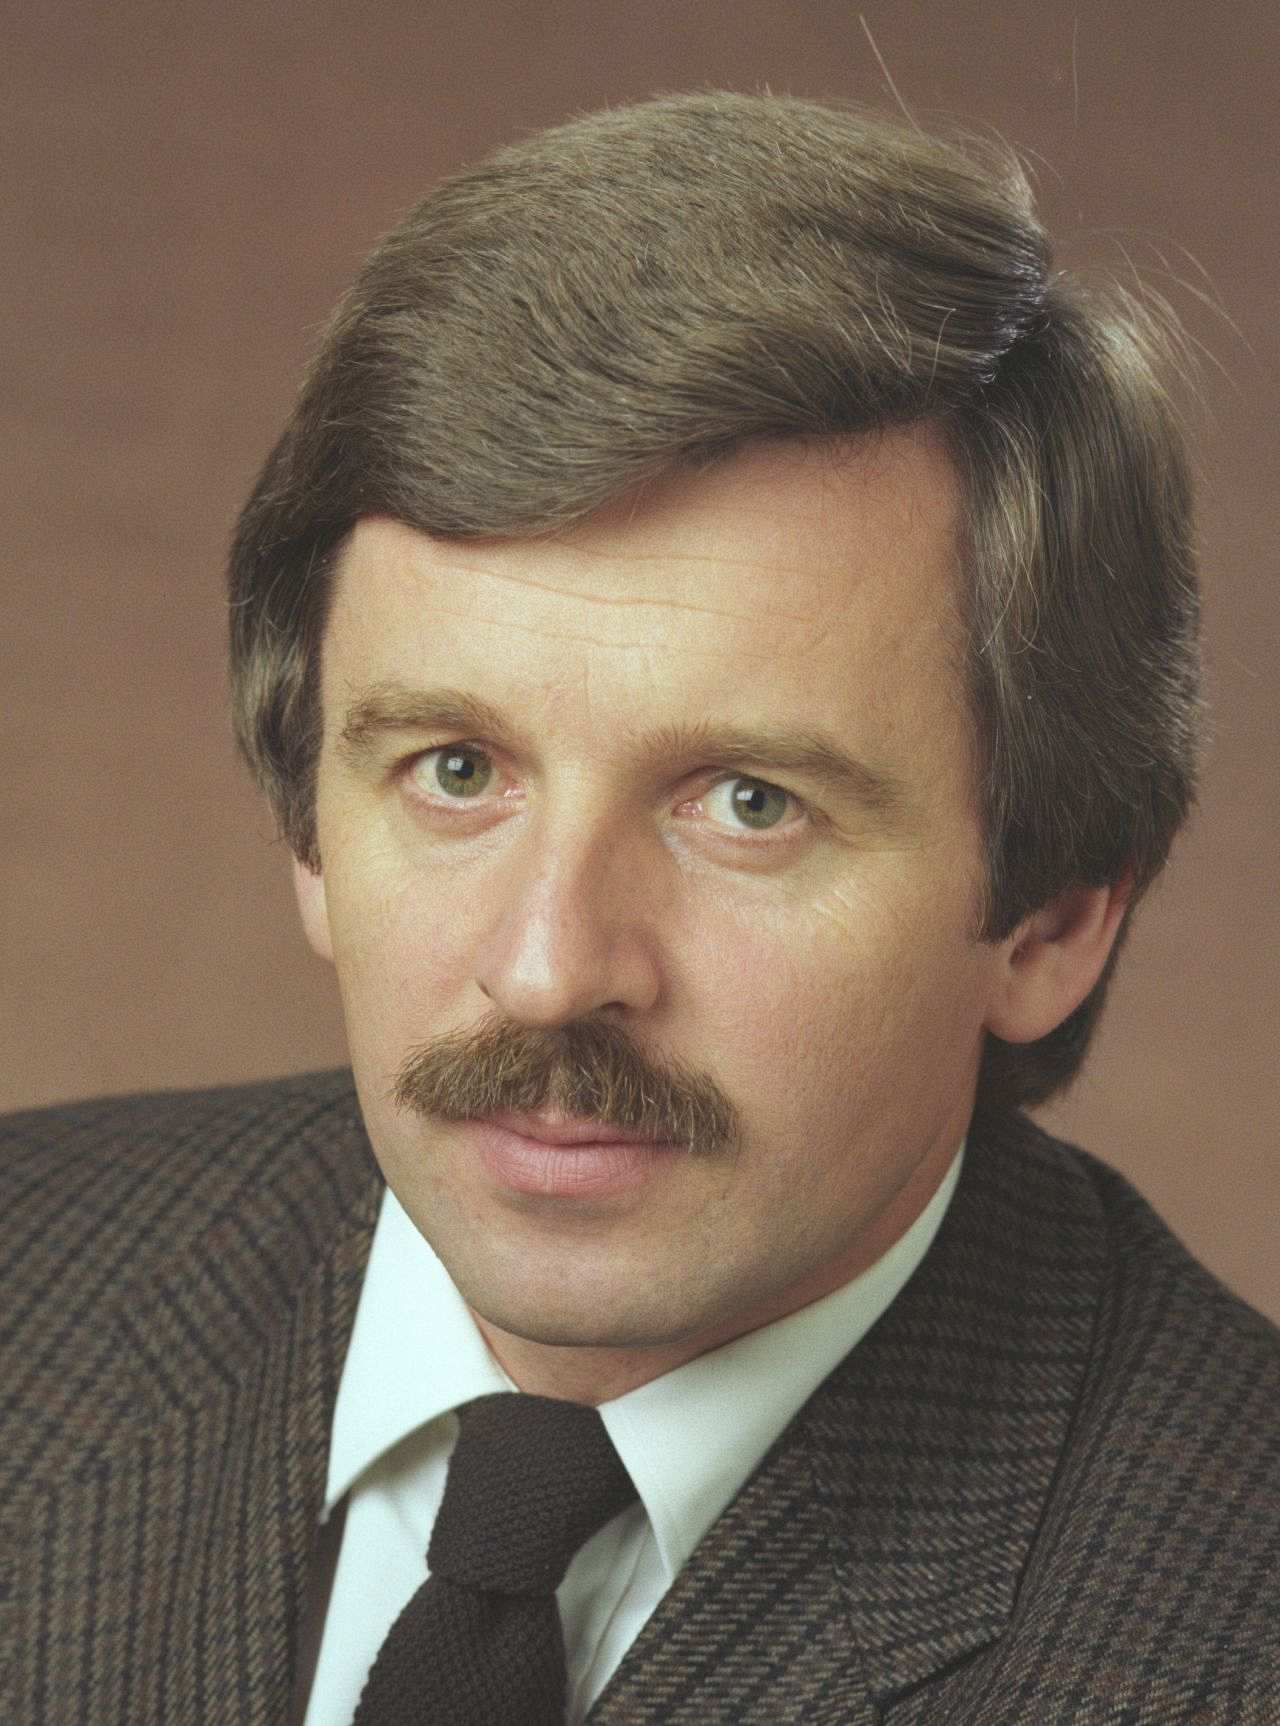 Offizielles Porträt von Jürgen W. Möllemann, Staatsminister im Auswärtigen Amt (1982-1987), 1982.